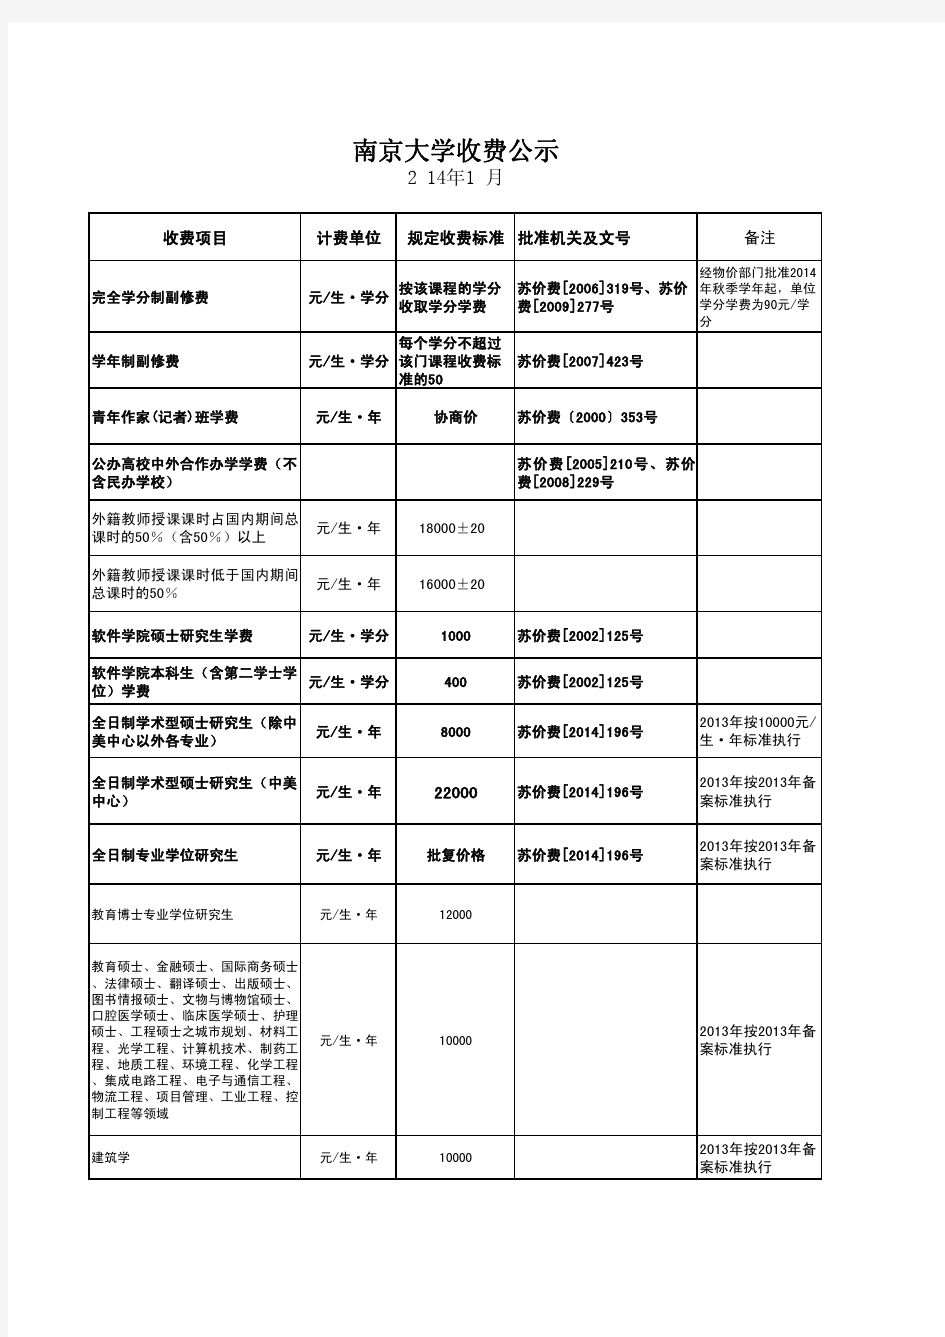 南京大学收费公示 - 信息公开